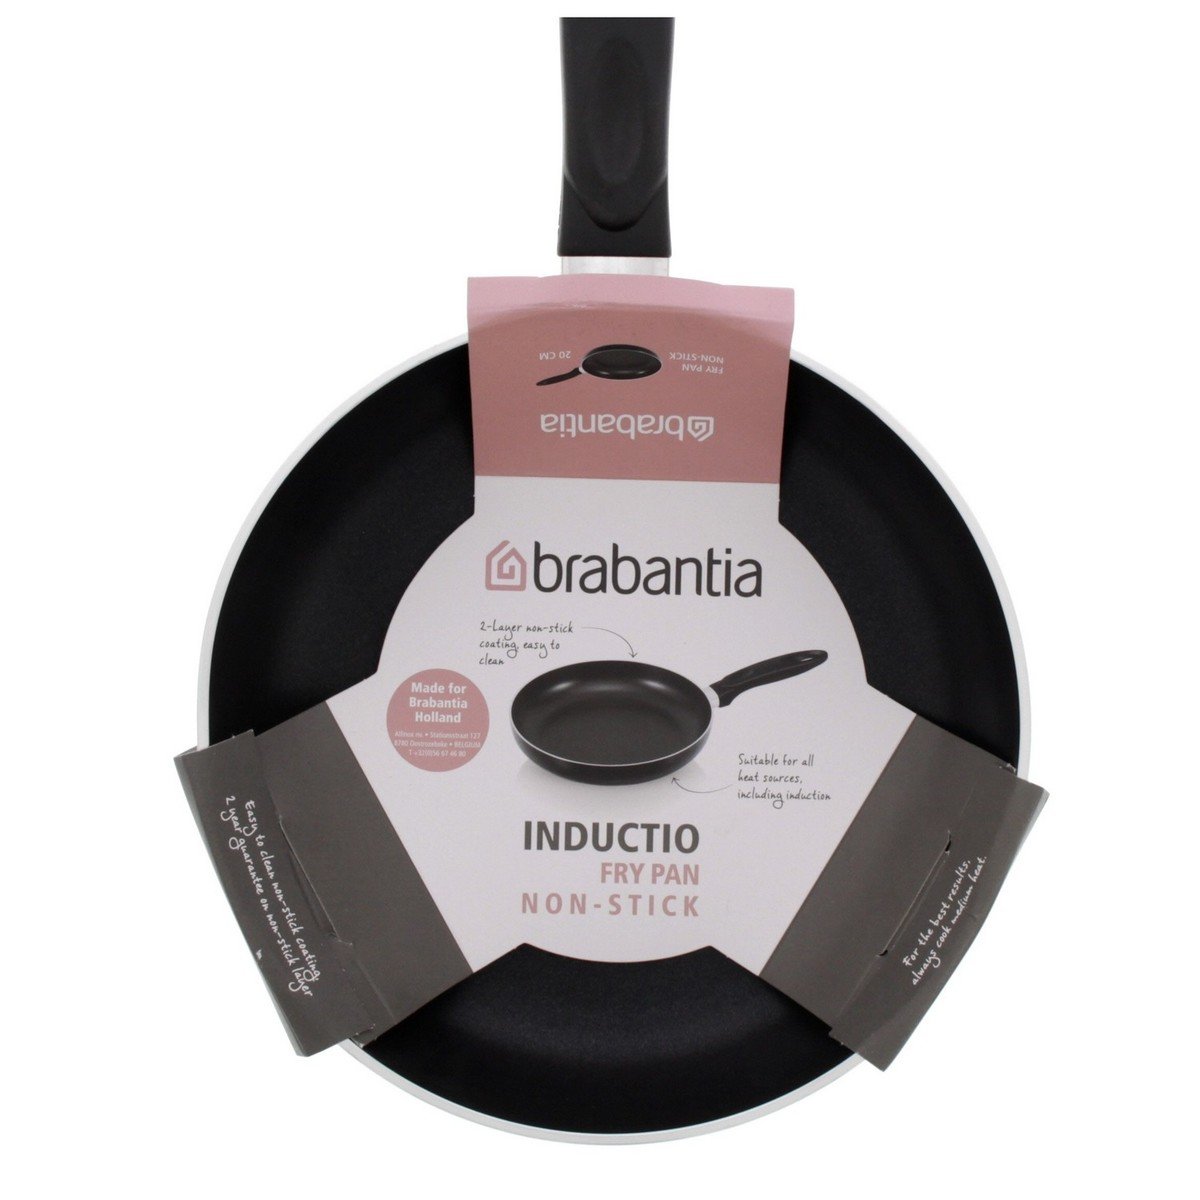 Brabantia Non-Stick Fry Pan, 22 cm, BR10916